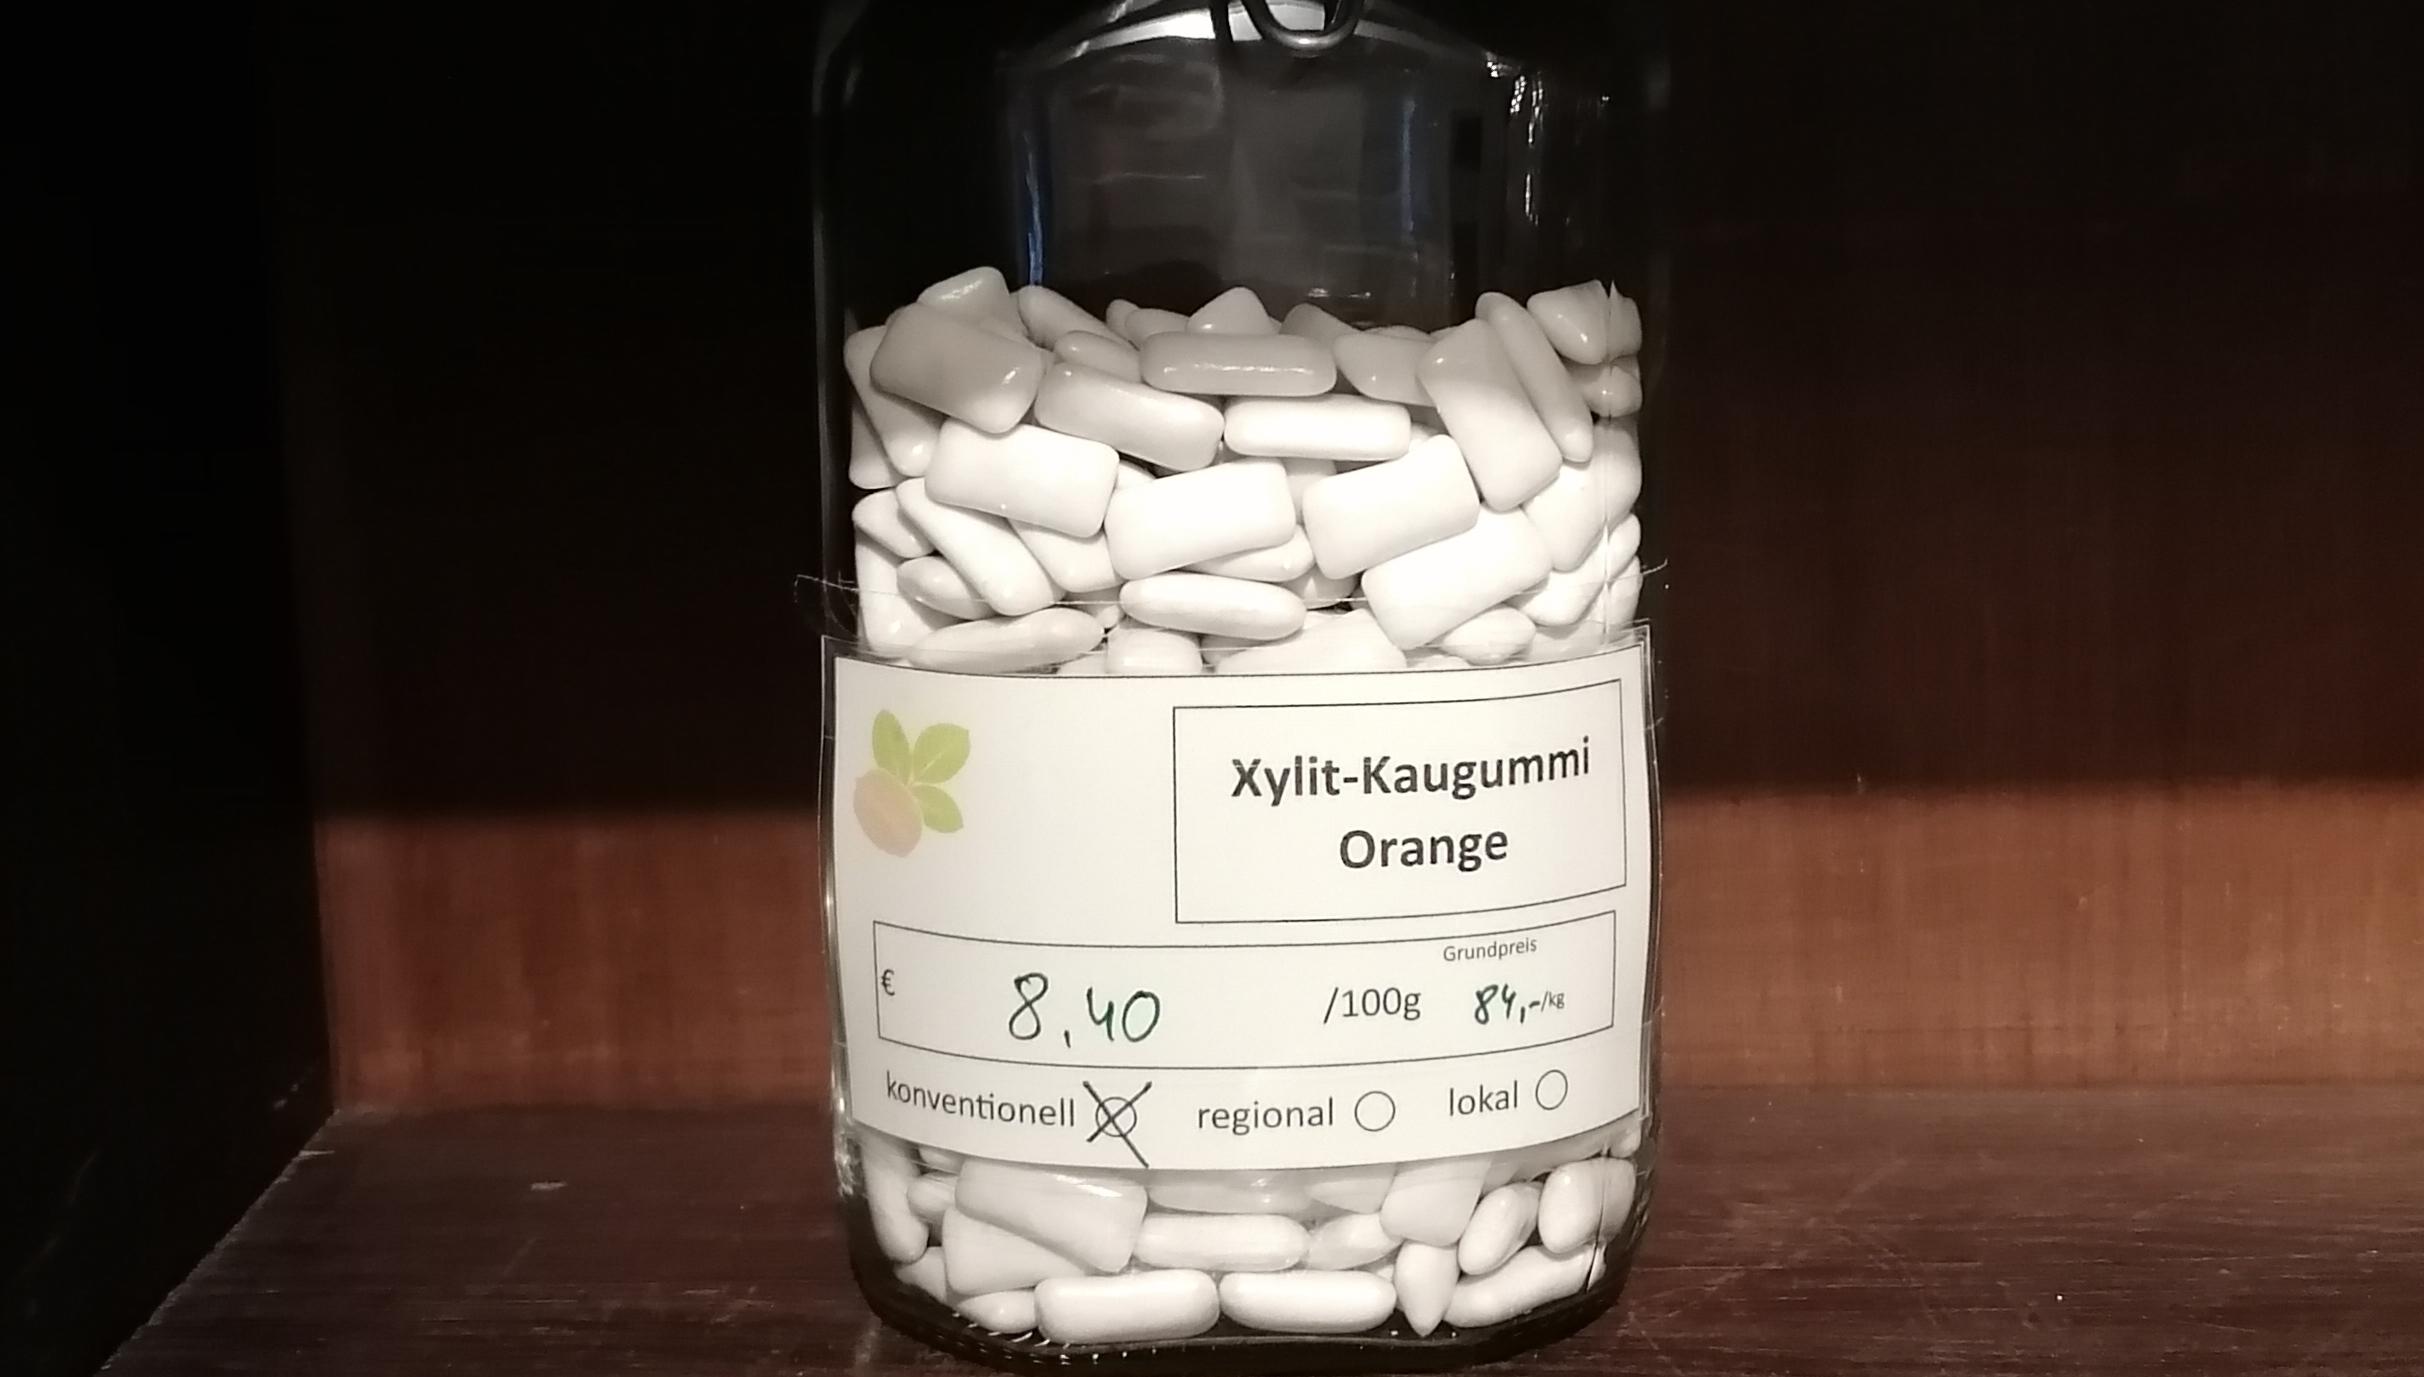 Xylit-Kaugummi Orange